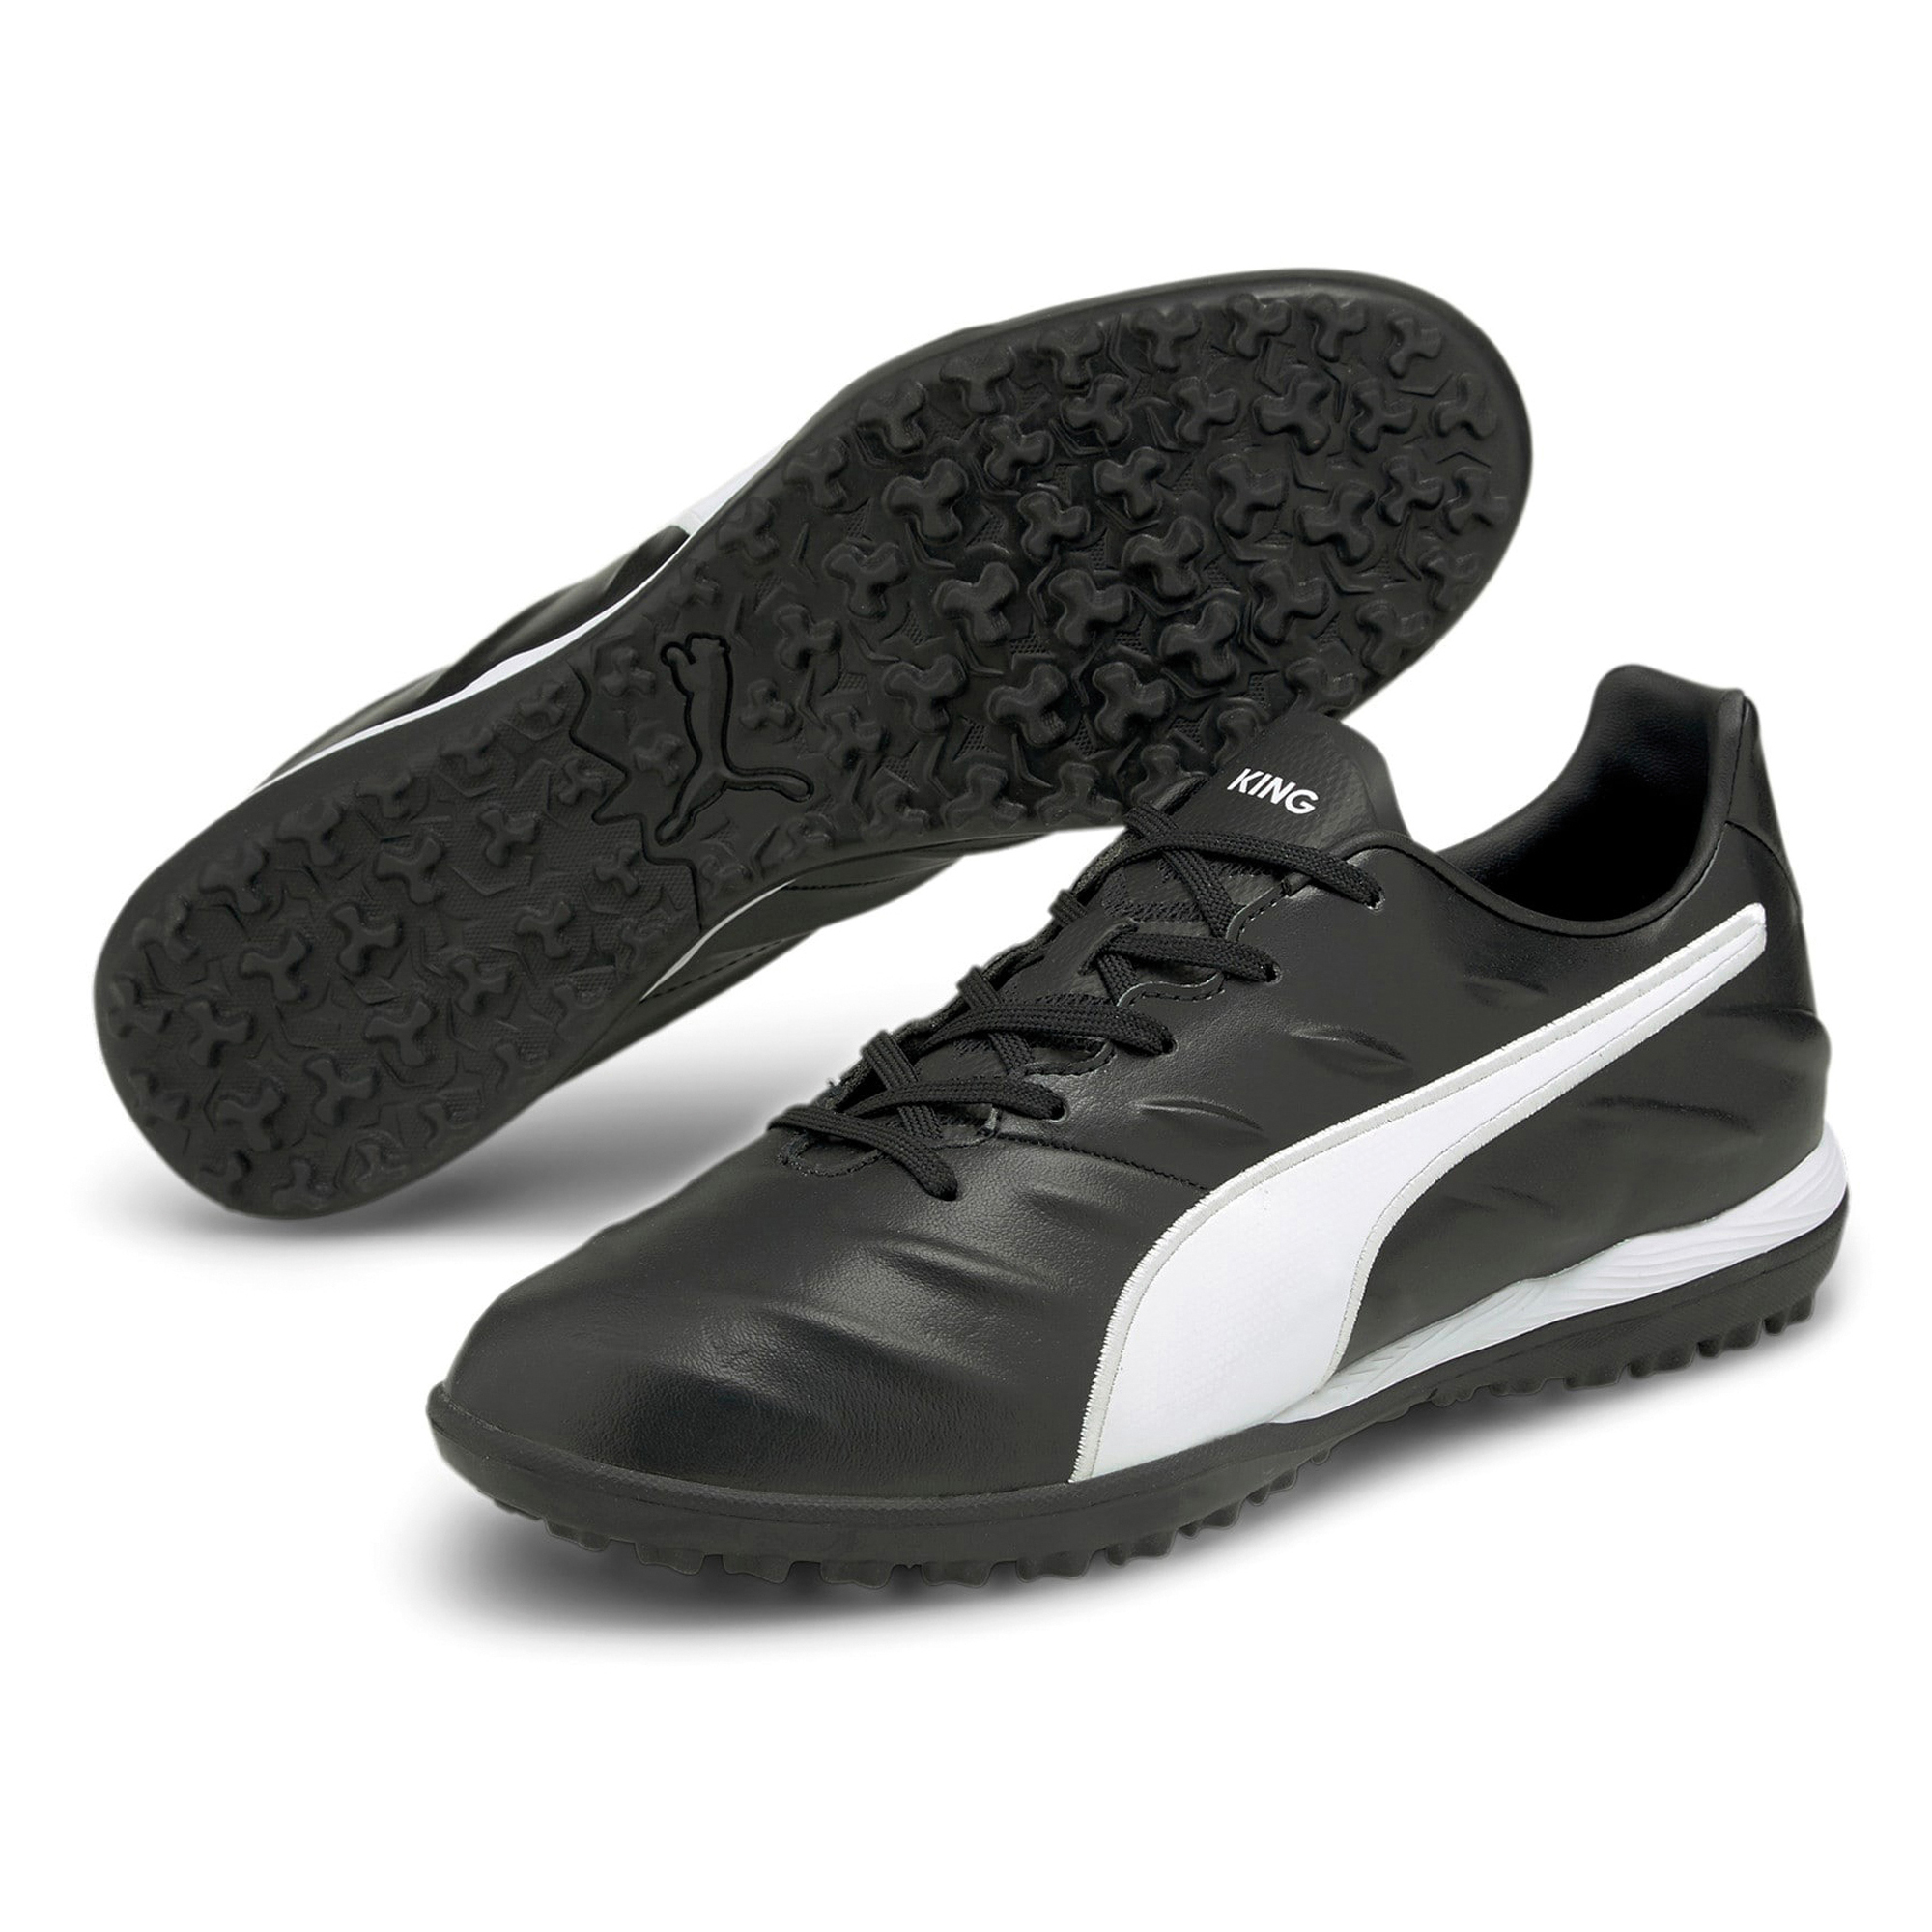 Chaussures de football Puma King Pro 21 TT